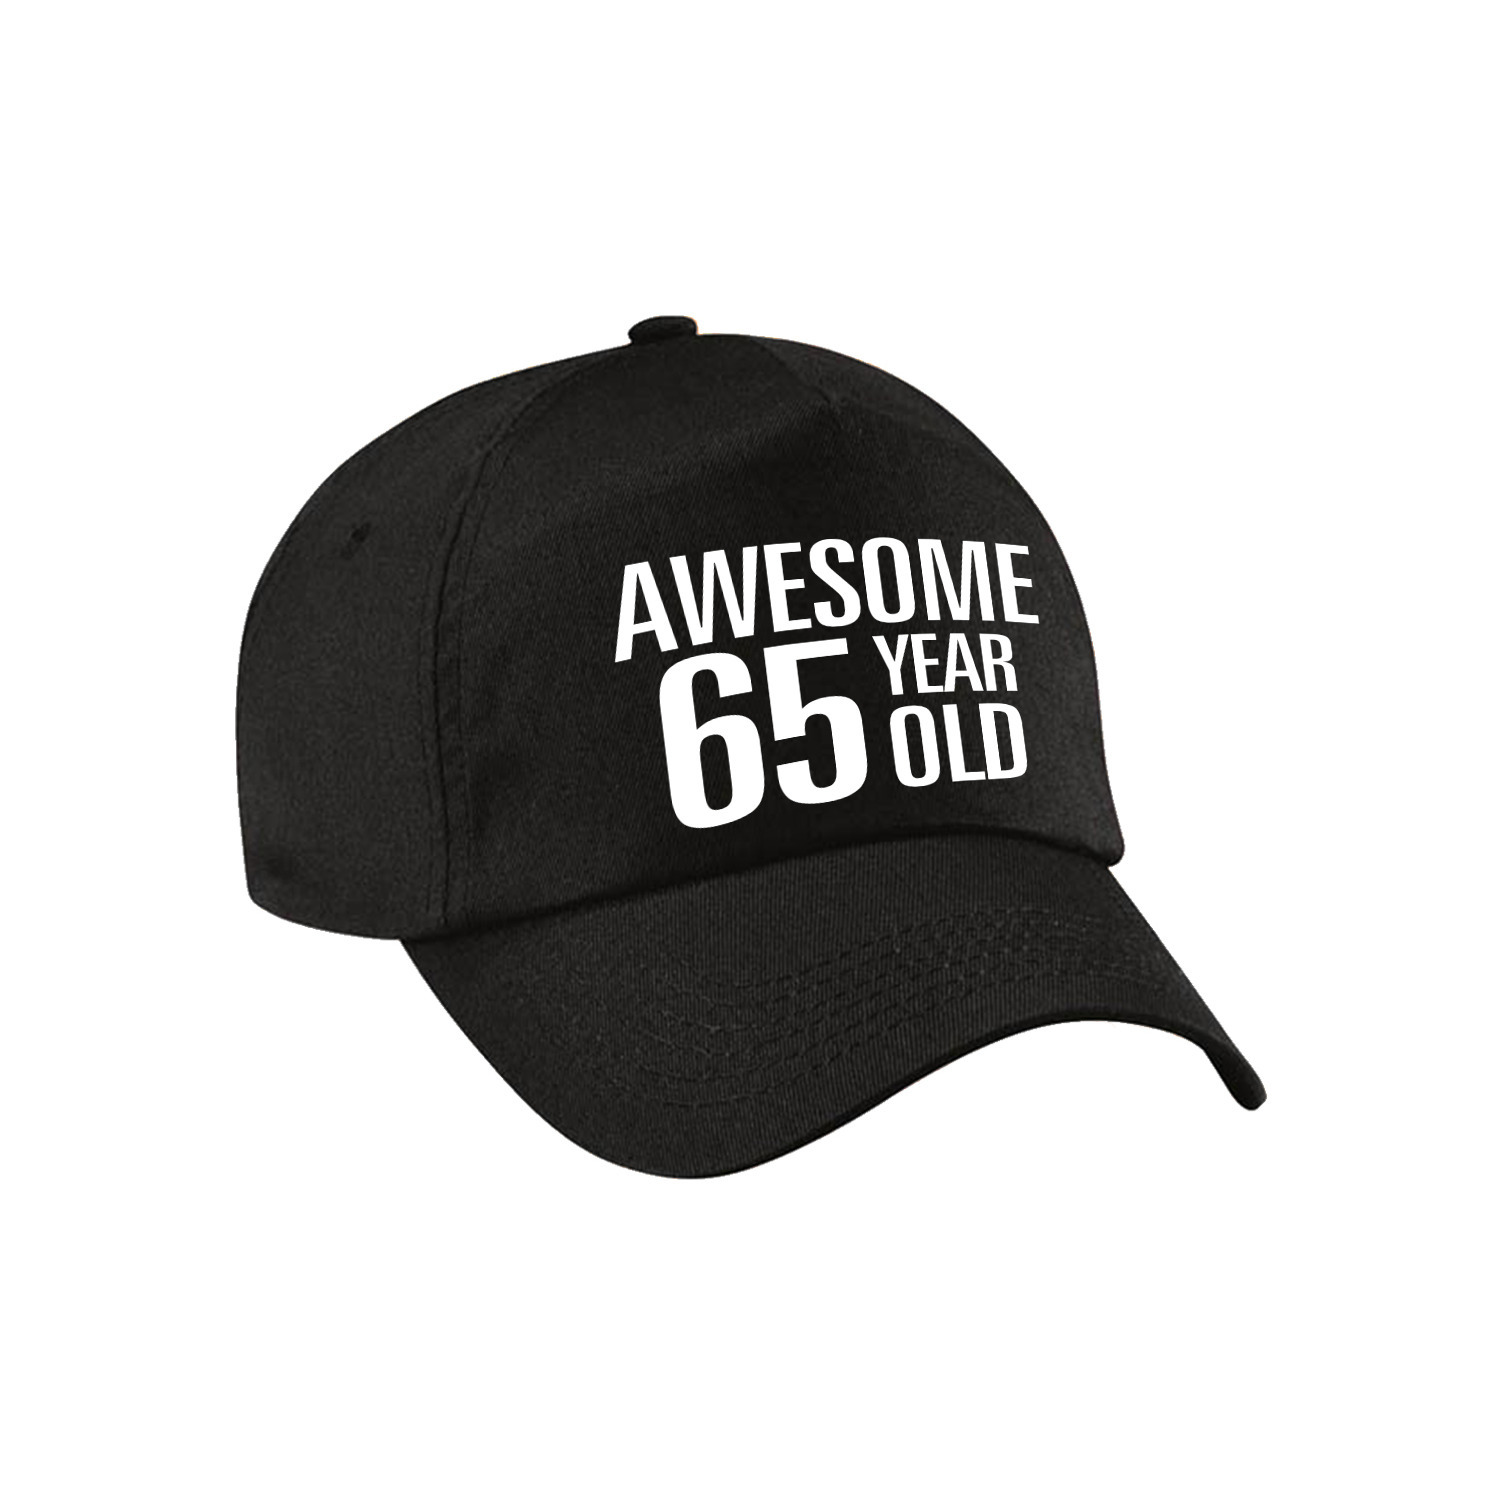 Awesome 65 year old verjaardag pet-cap zwart voor dames en heren